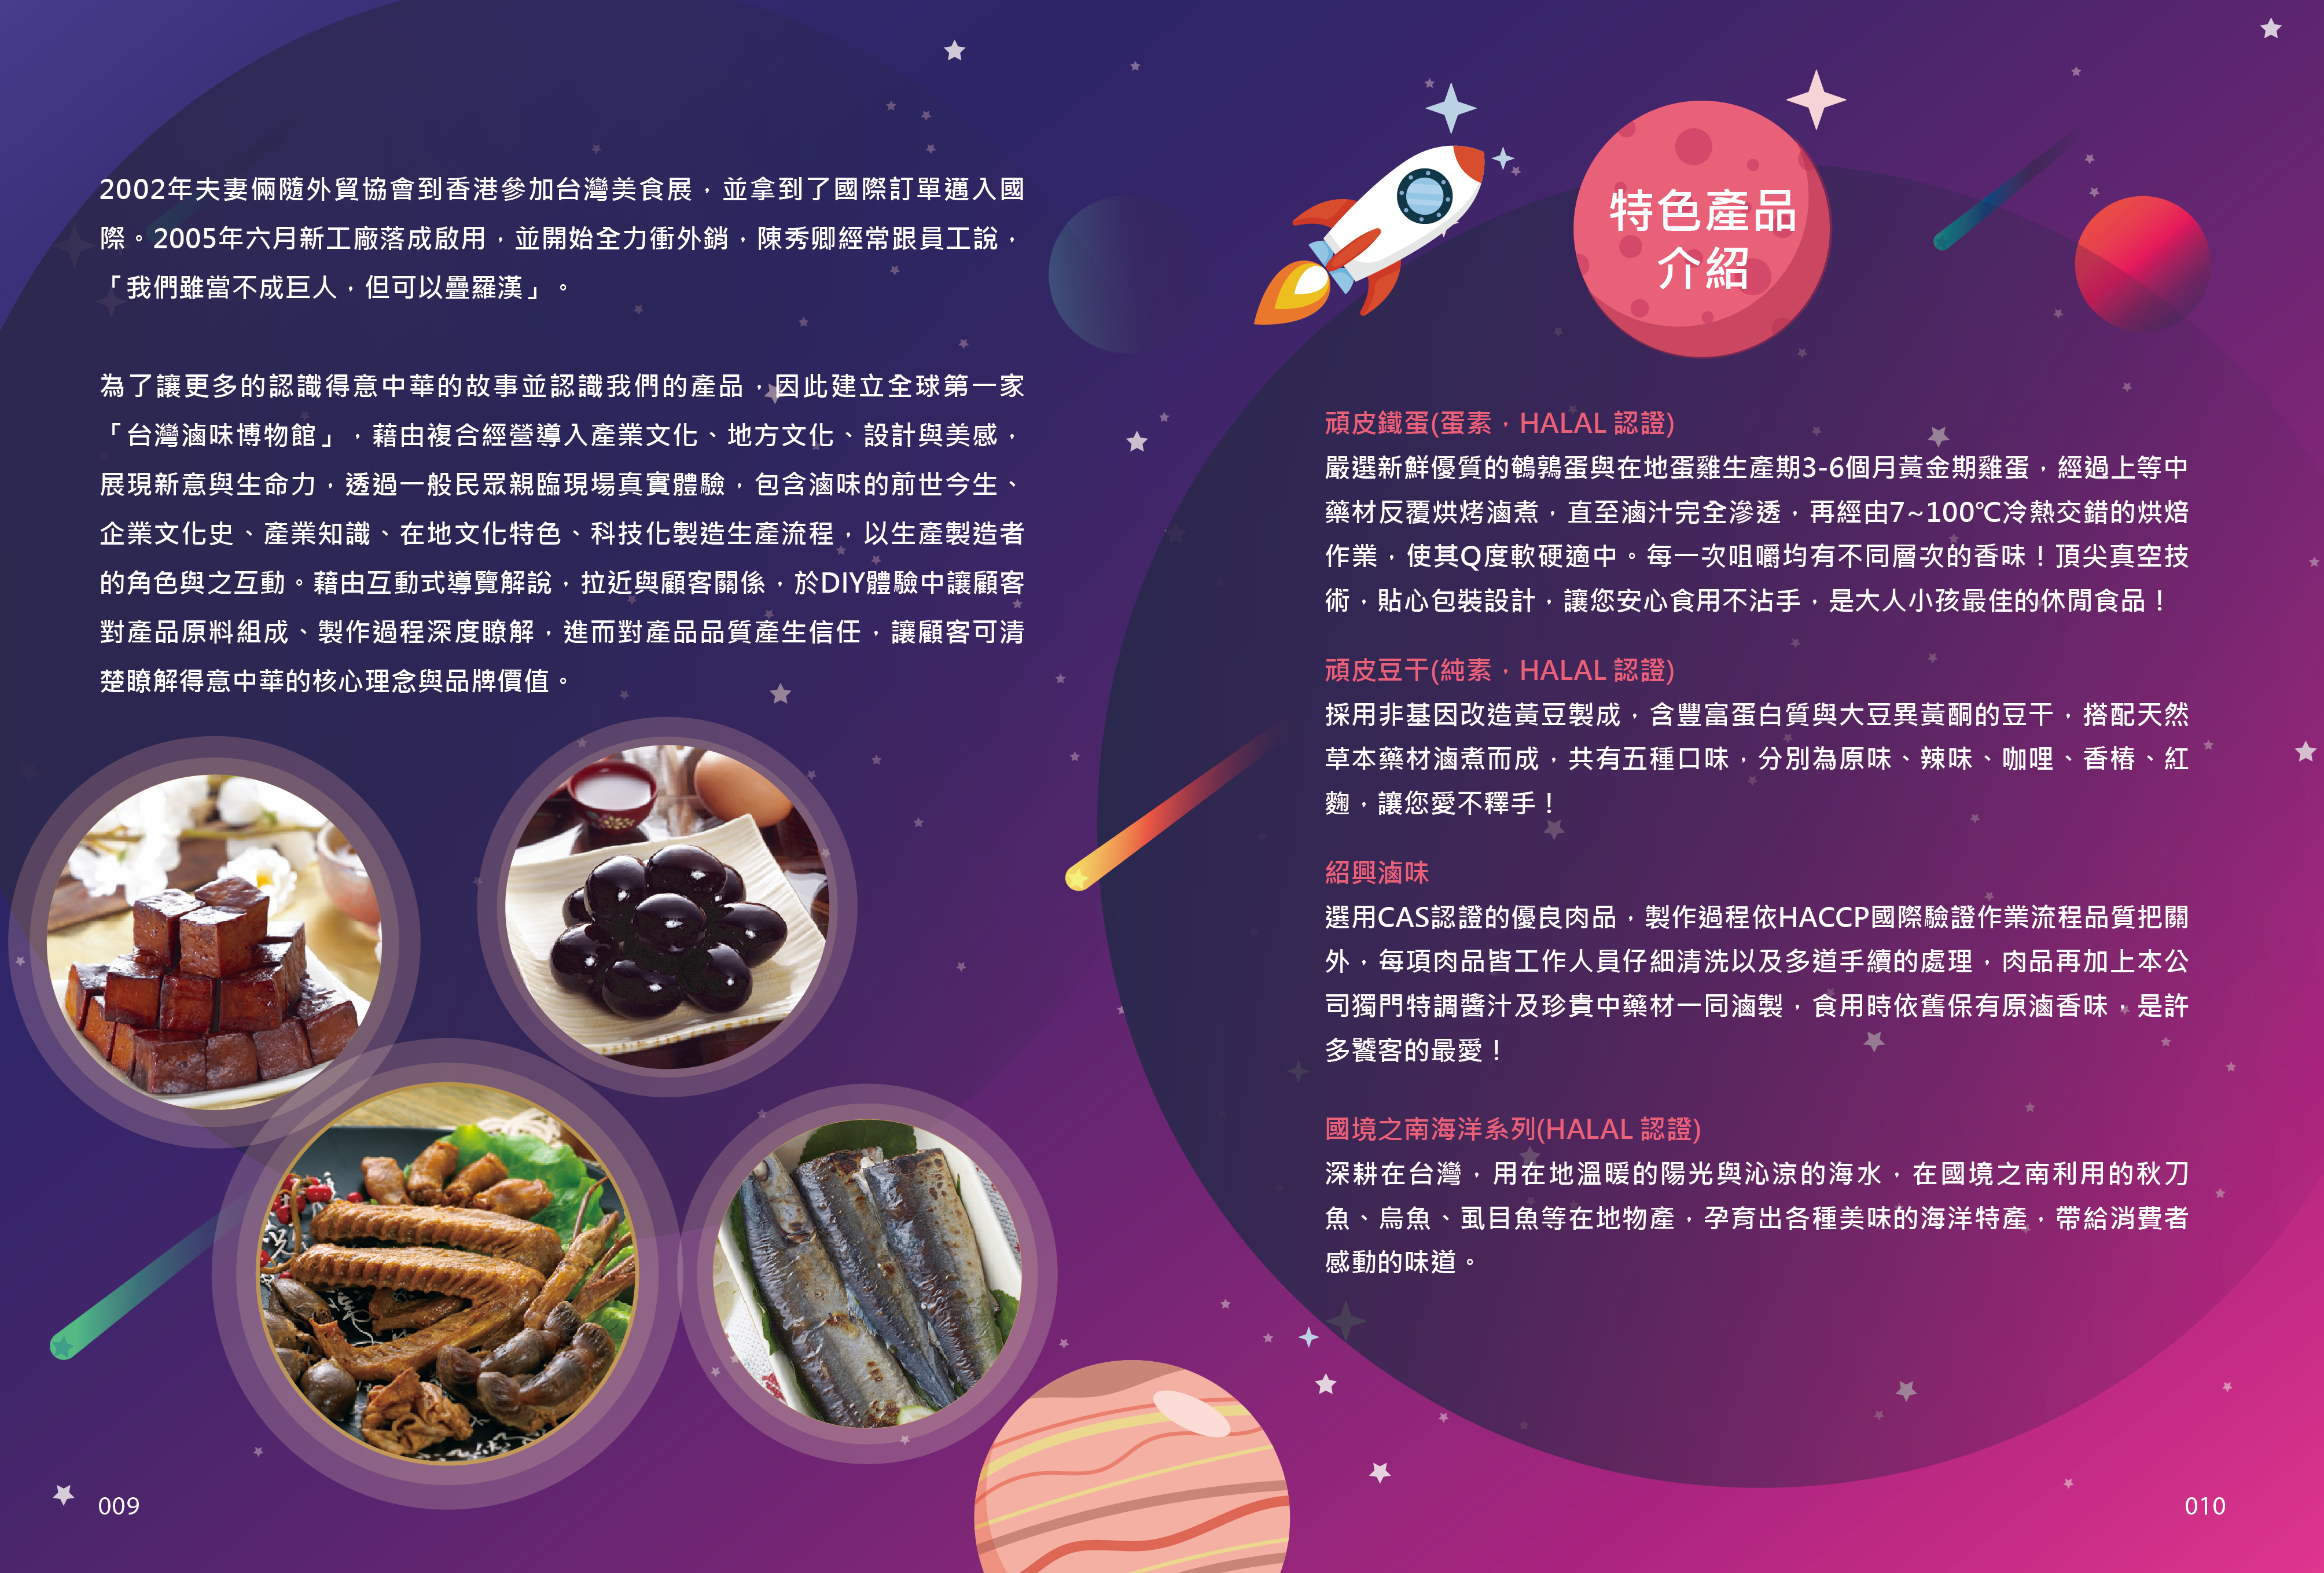 2018年度廠商專訪-國際亮點-台灣滷味博物館